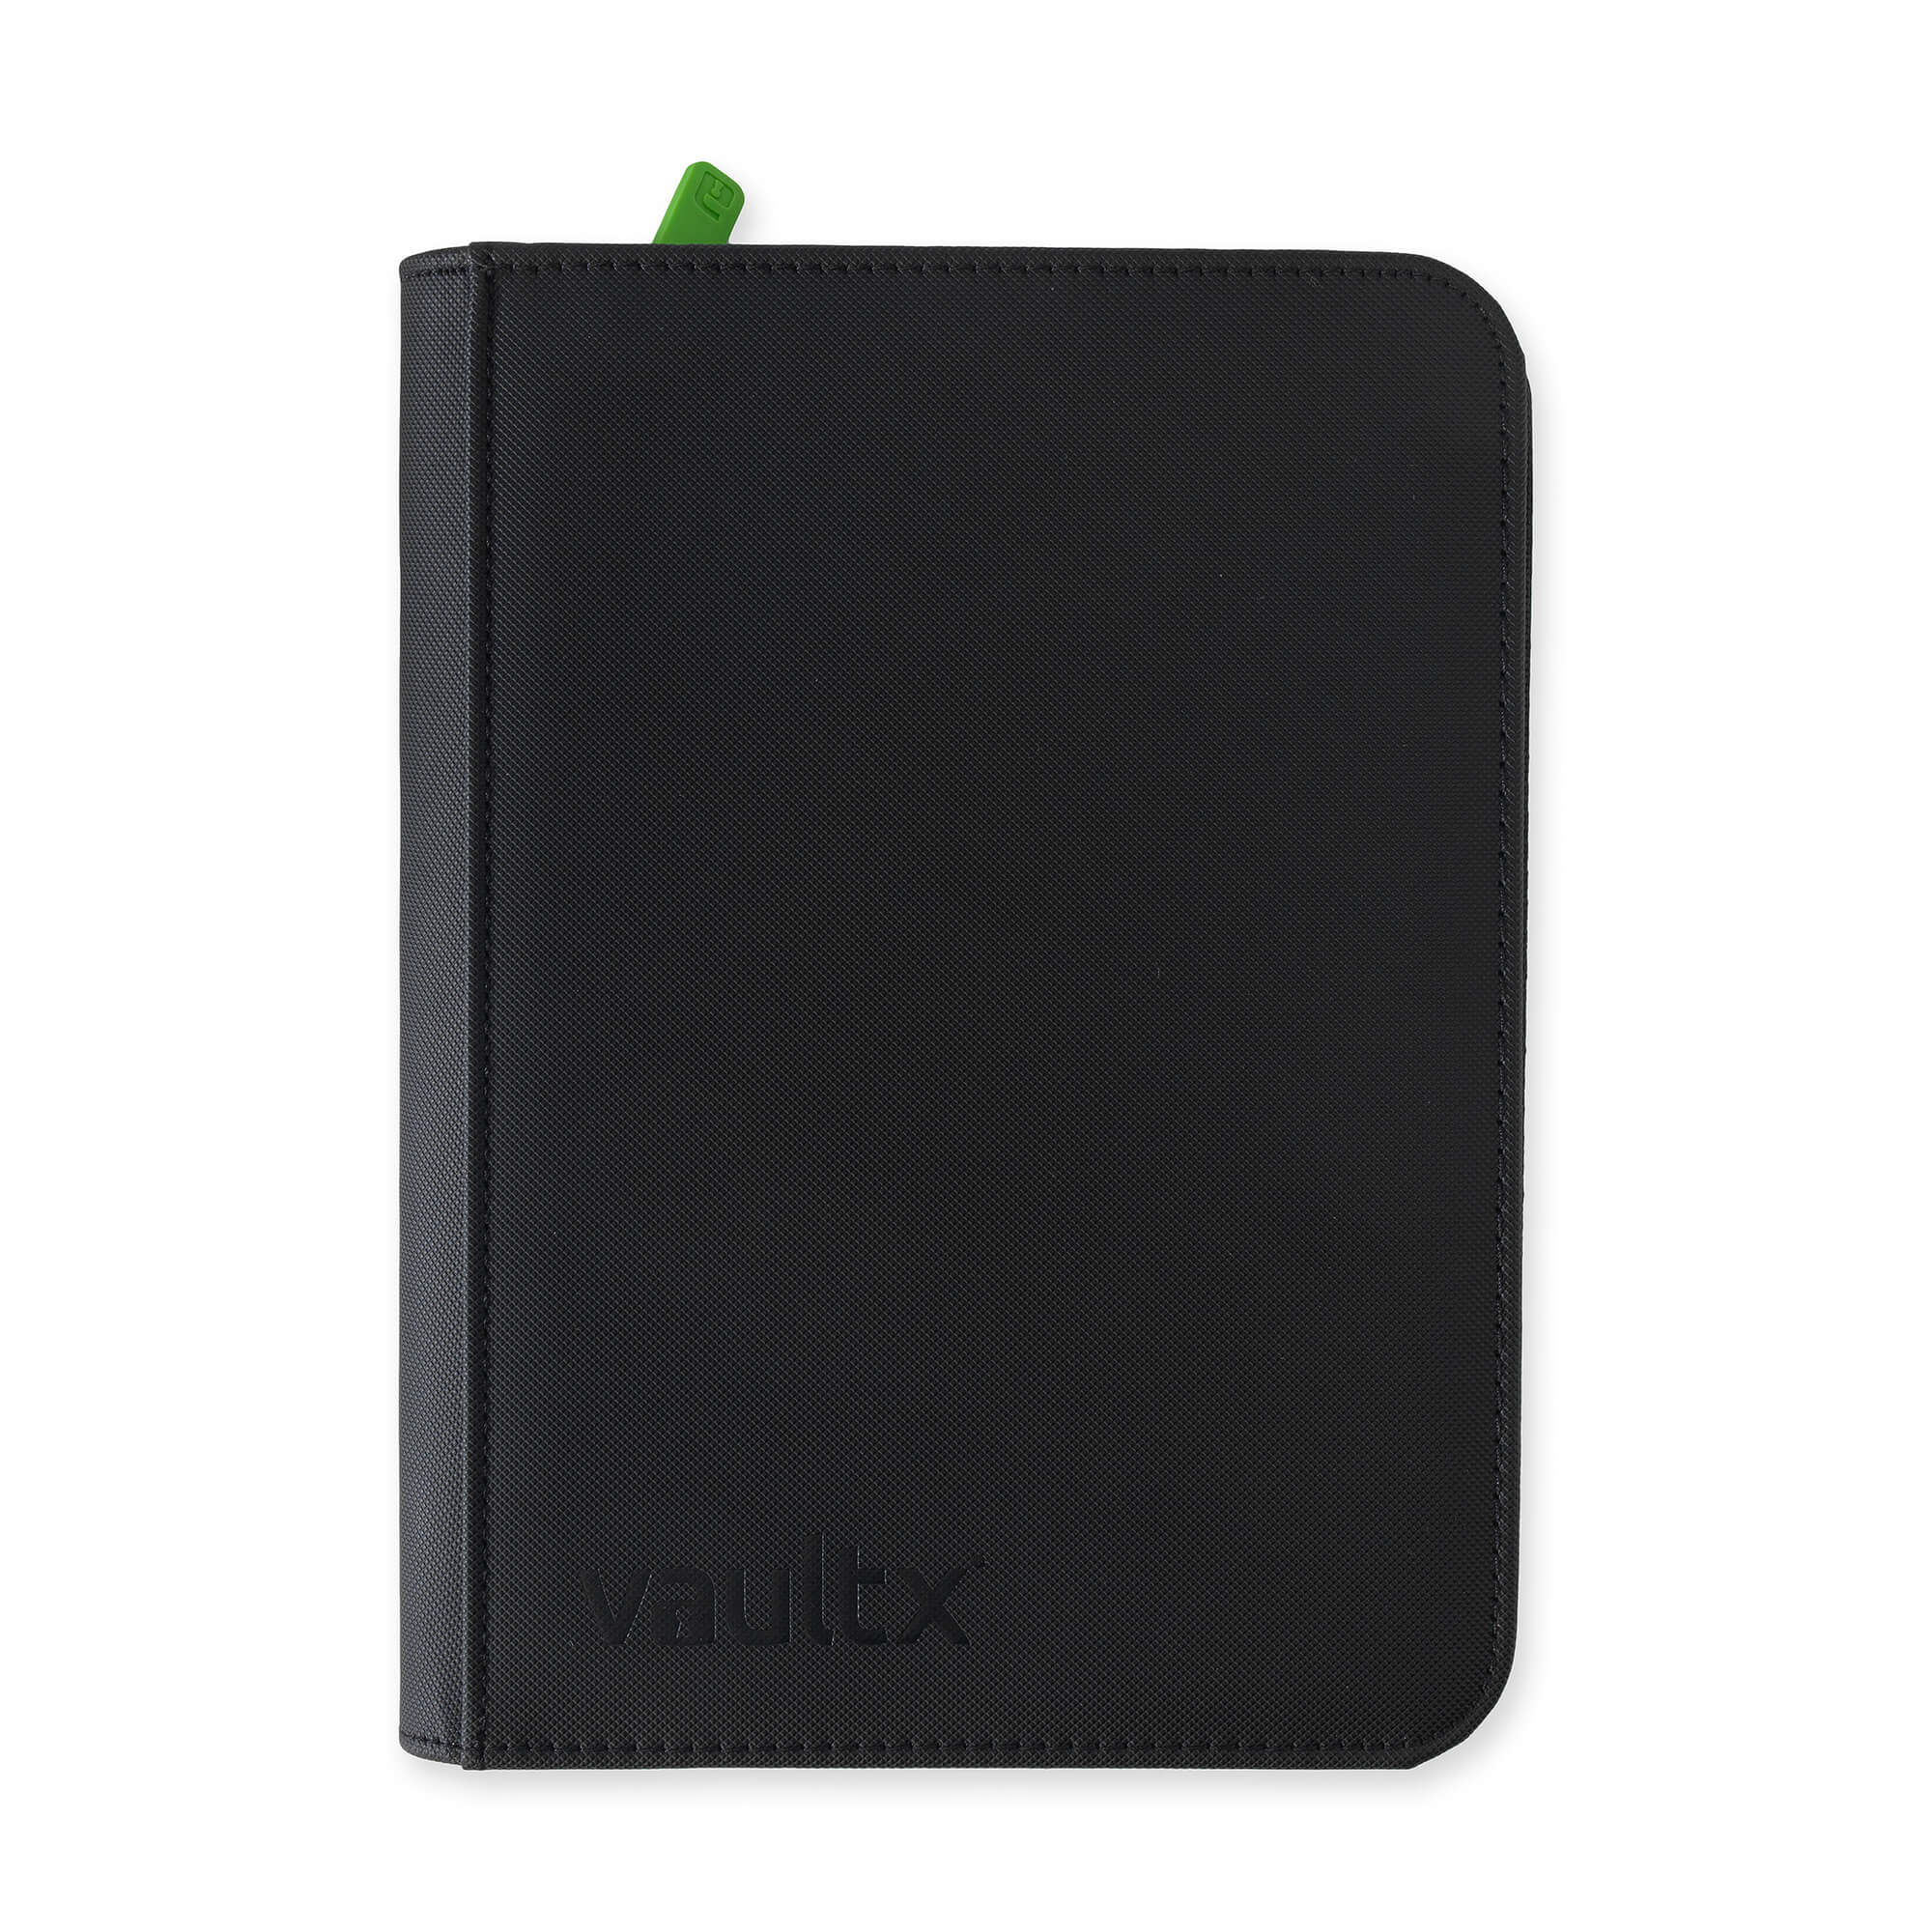 Vault X - 4-Pocket Exo-Tec® - Zip Binder - Black